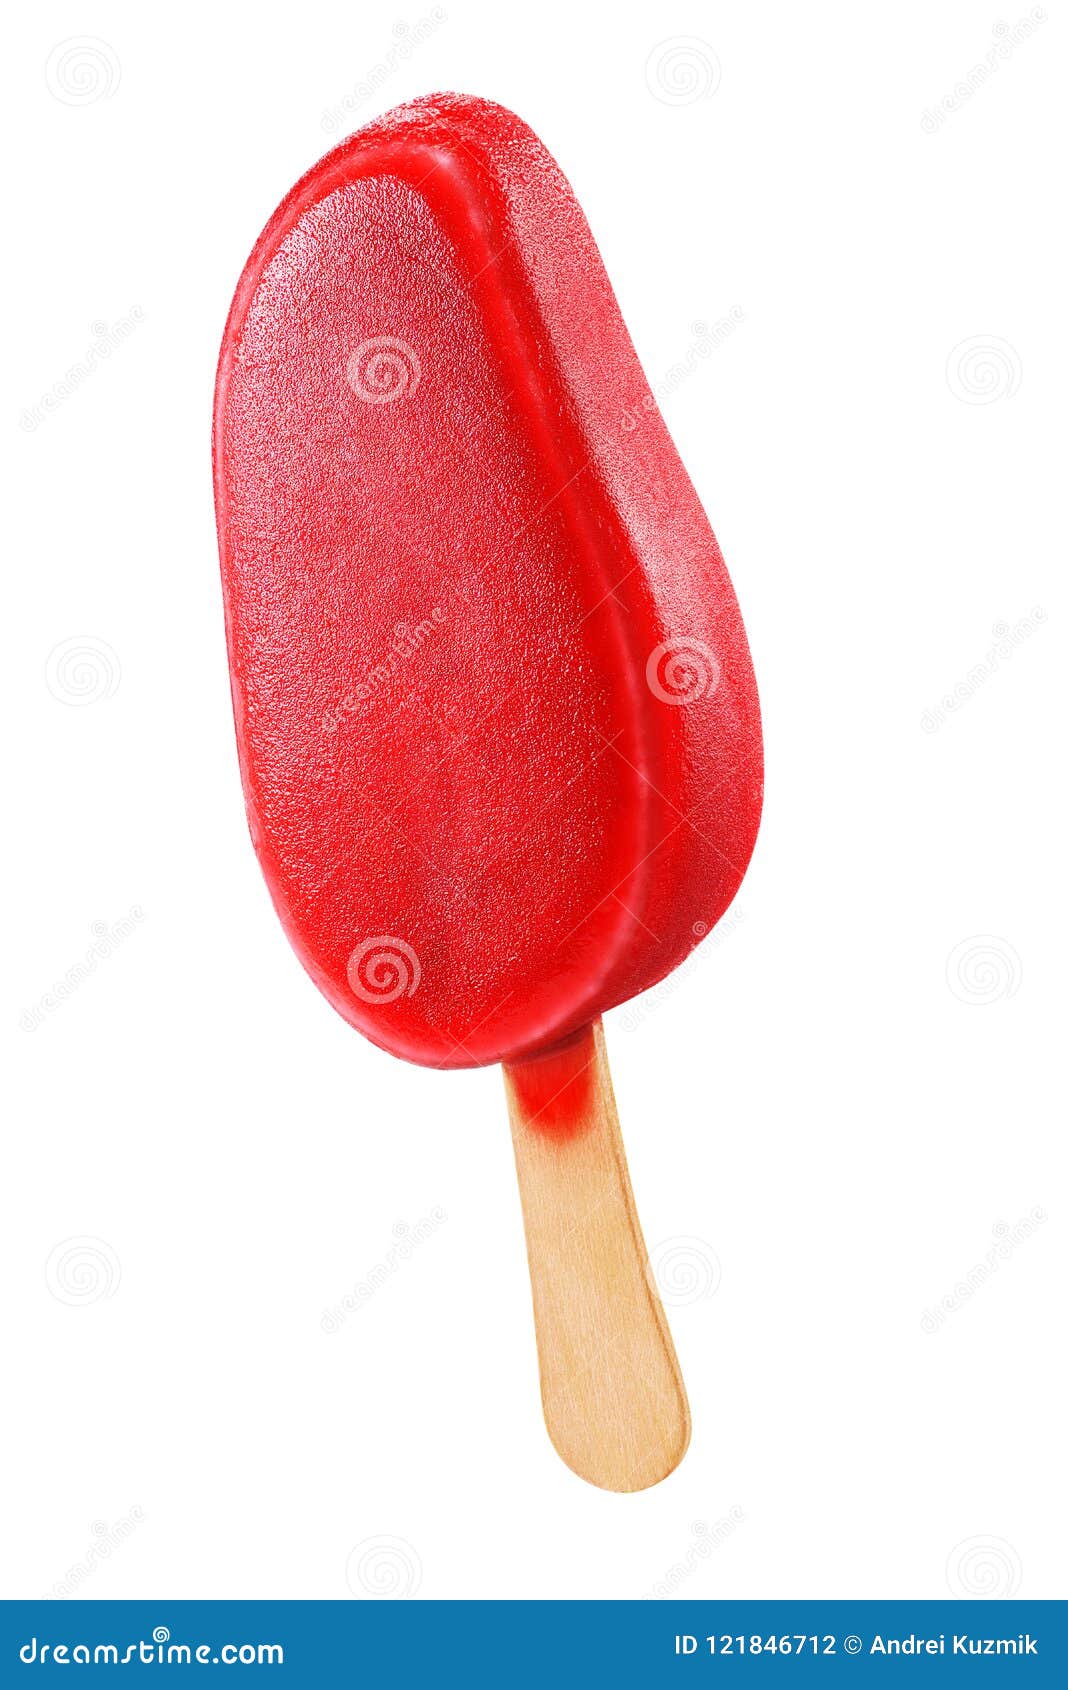 Красный эскимо. Вишневое мороженое на палочке. Красное мороженое на палочке. Красное эскимо. Мороженое эскимо красное.